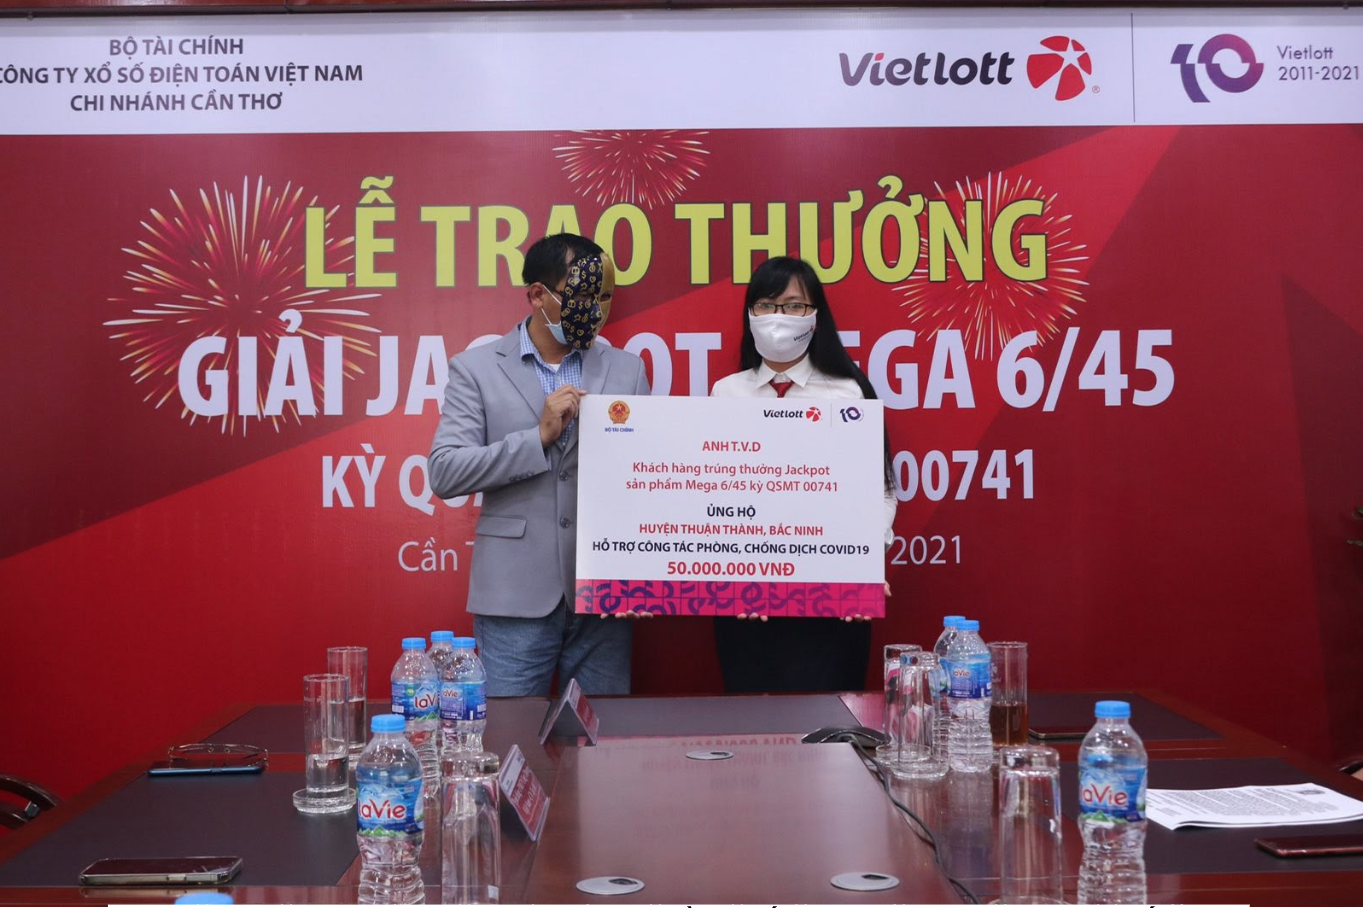 Người trúng thưởng trao tặng 50 triệu đồng đến huyện Thuận Thành, Bắc Ninh